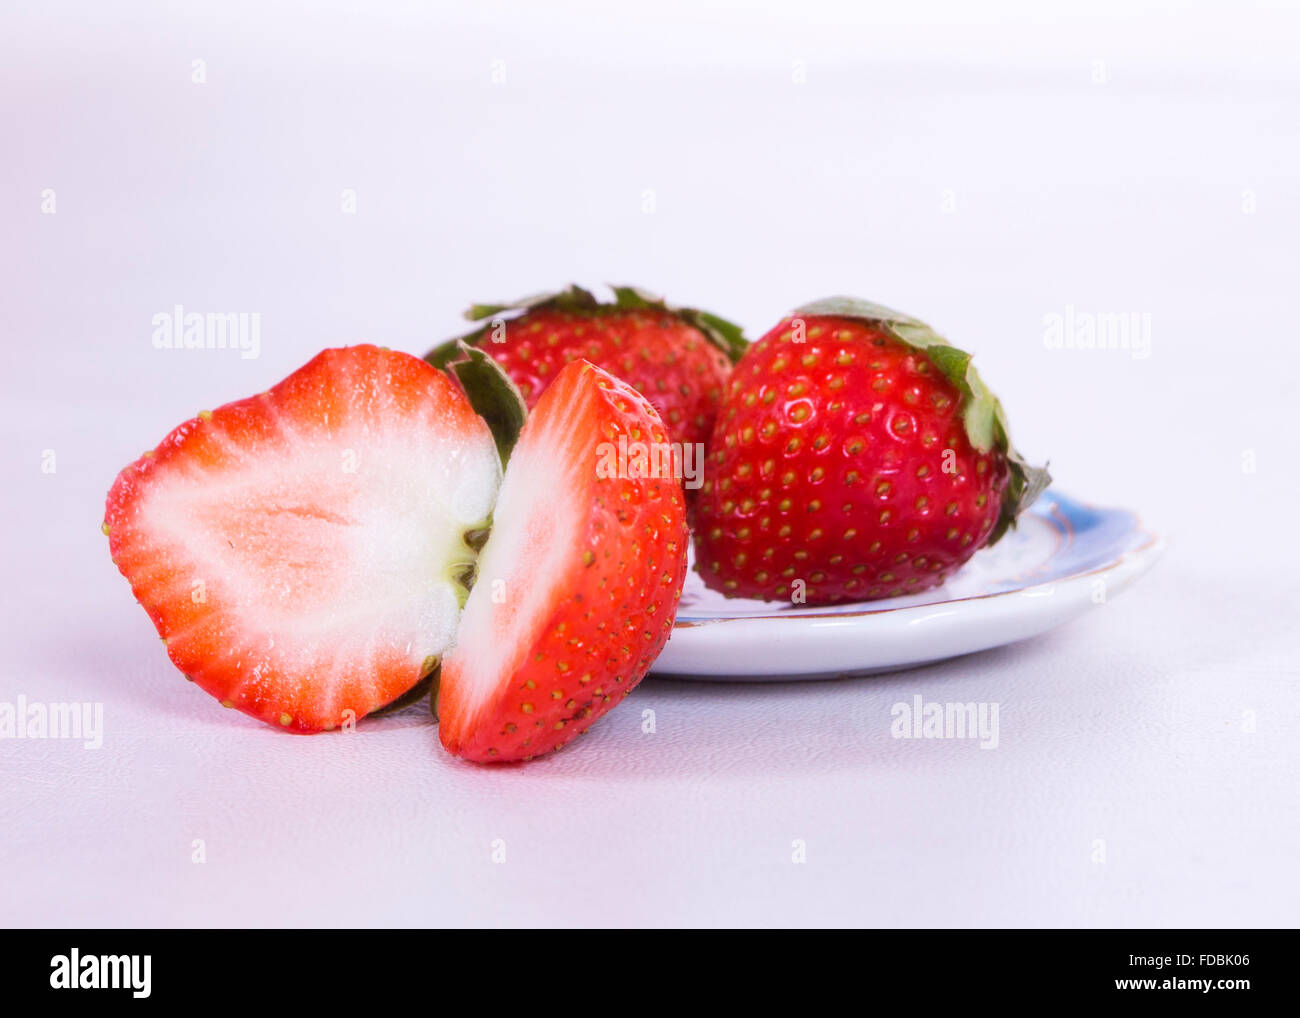 Une fraise coupé en deux et deux fraises derrière cette plus dans un petit plat Banque D'Images